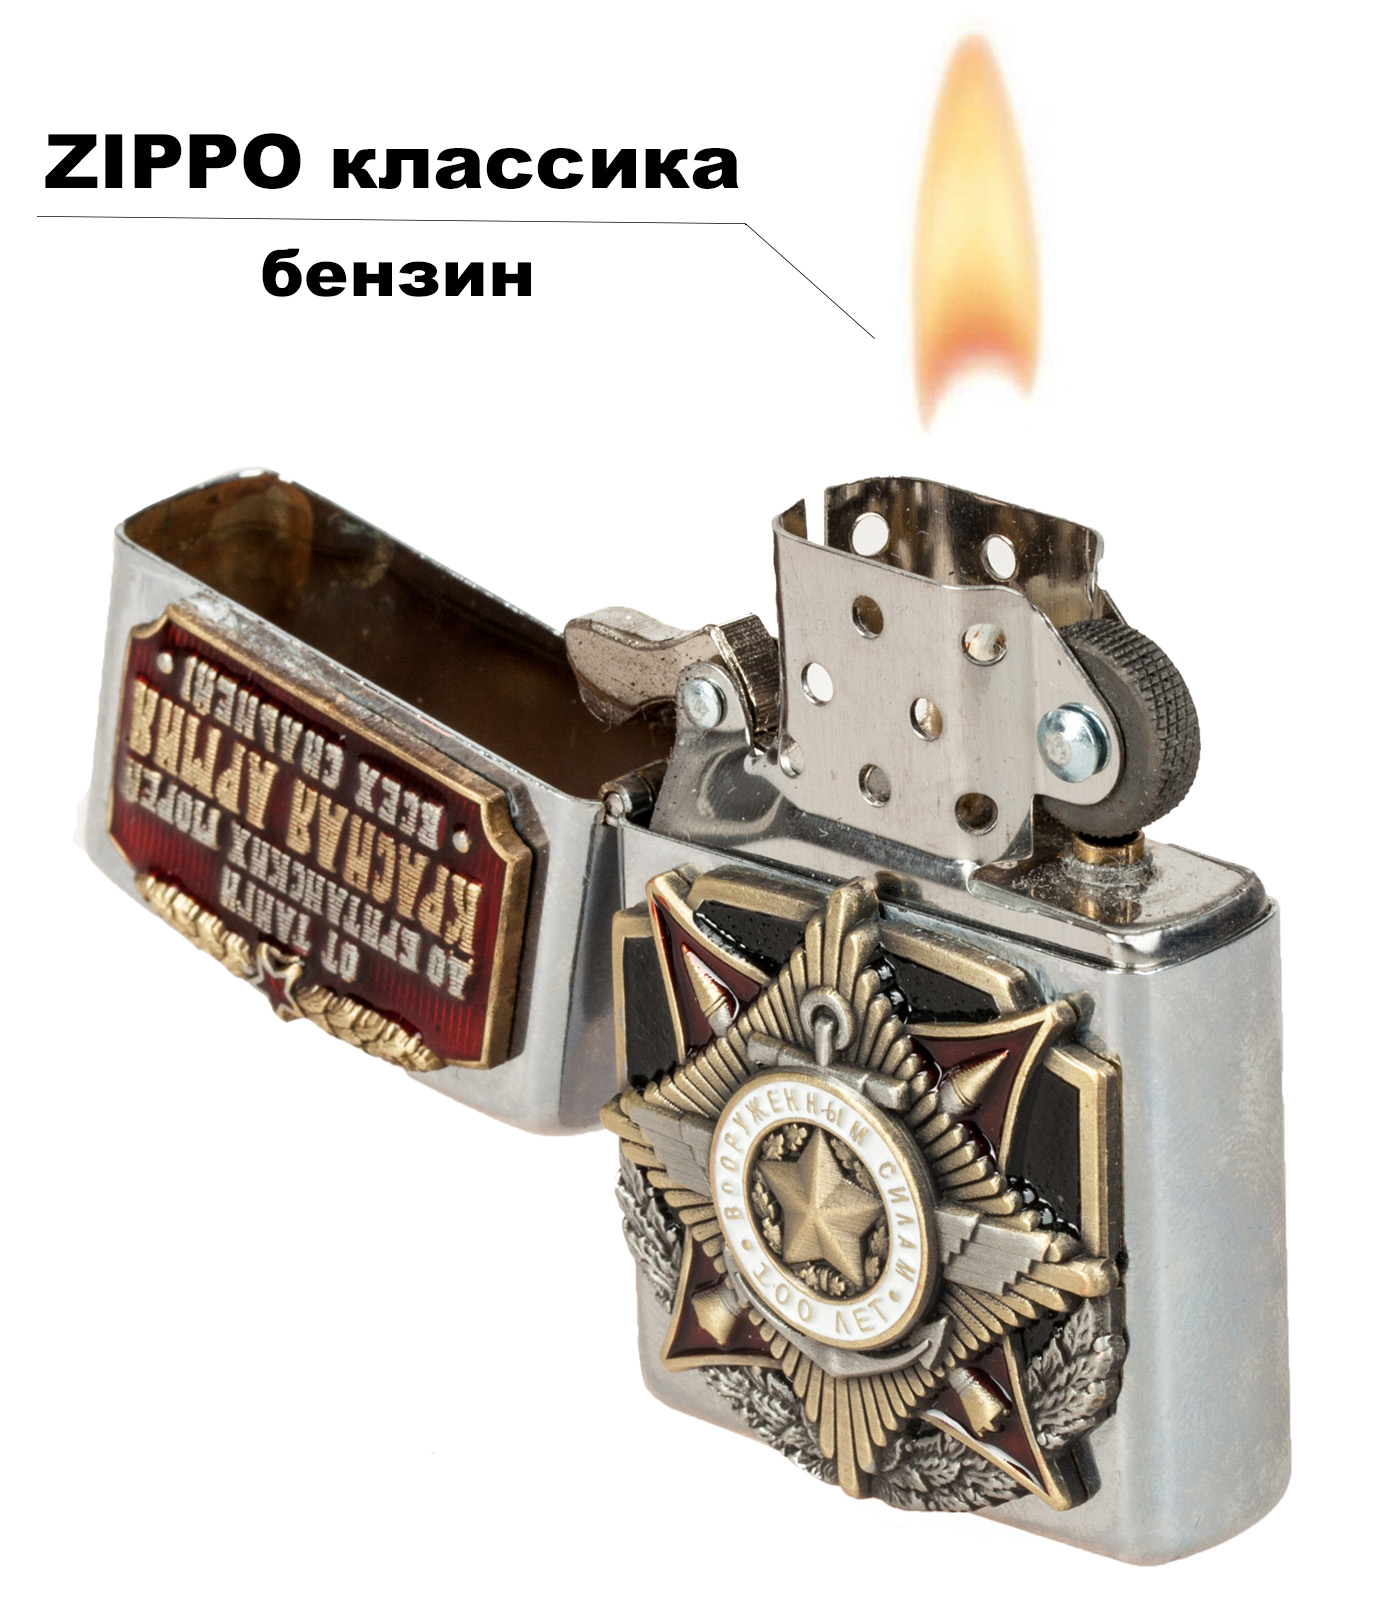 Подарочная зажигалка "100 лет Вооруженным силам" 